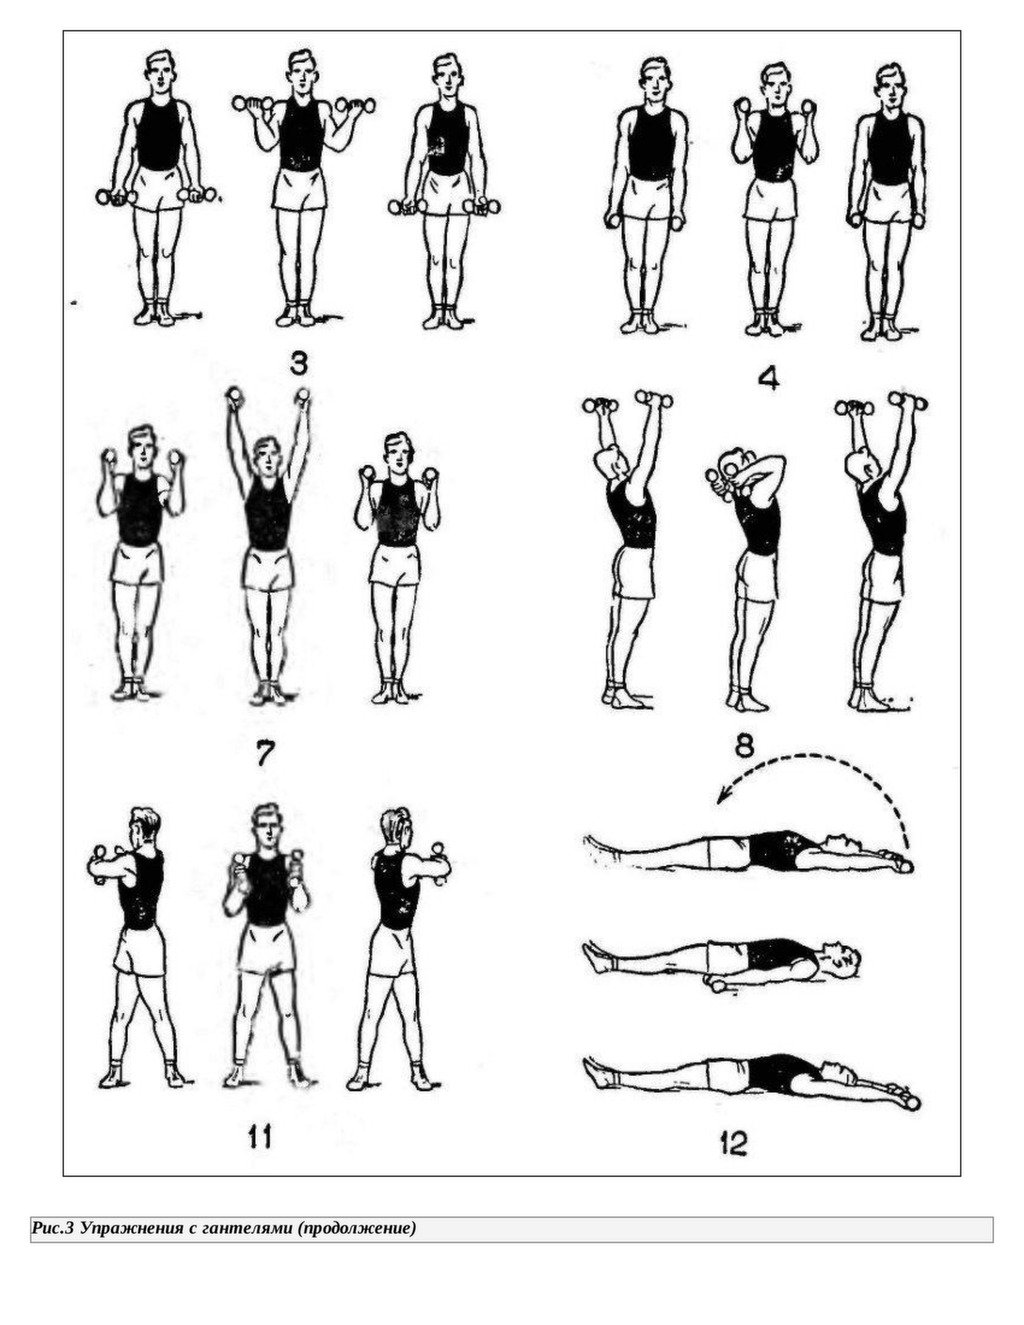 Уроки зарядка для начинающих. Комплекс упражнений с гантельками. Комплекс упражнений с гантелями (10-12 упражнений). Комплекс упражнений для рук с гантелями. Упражнения с гантельками для женщин.